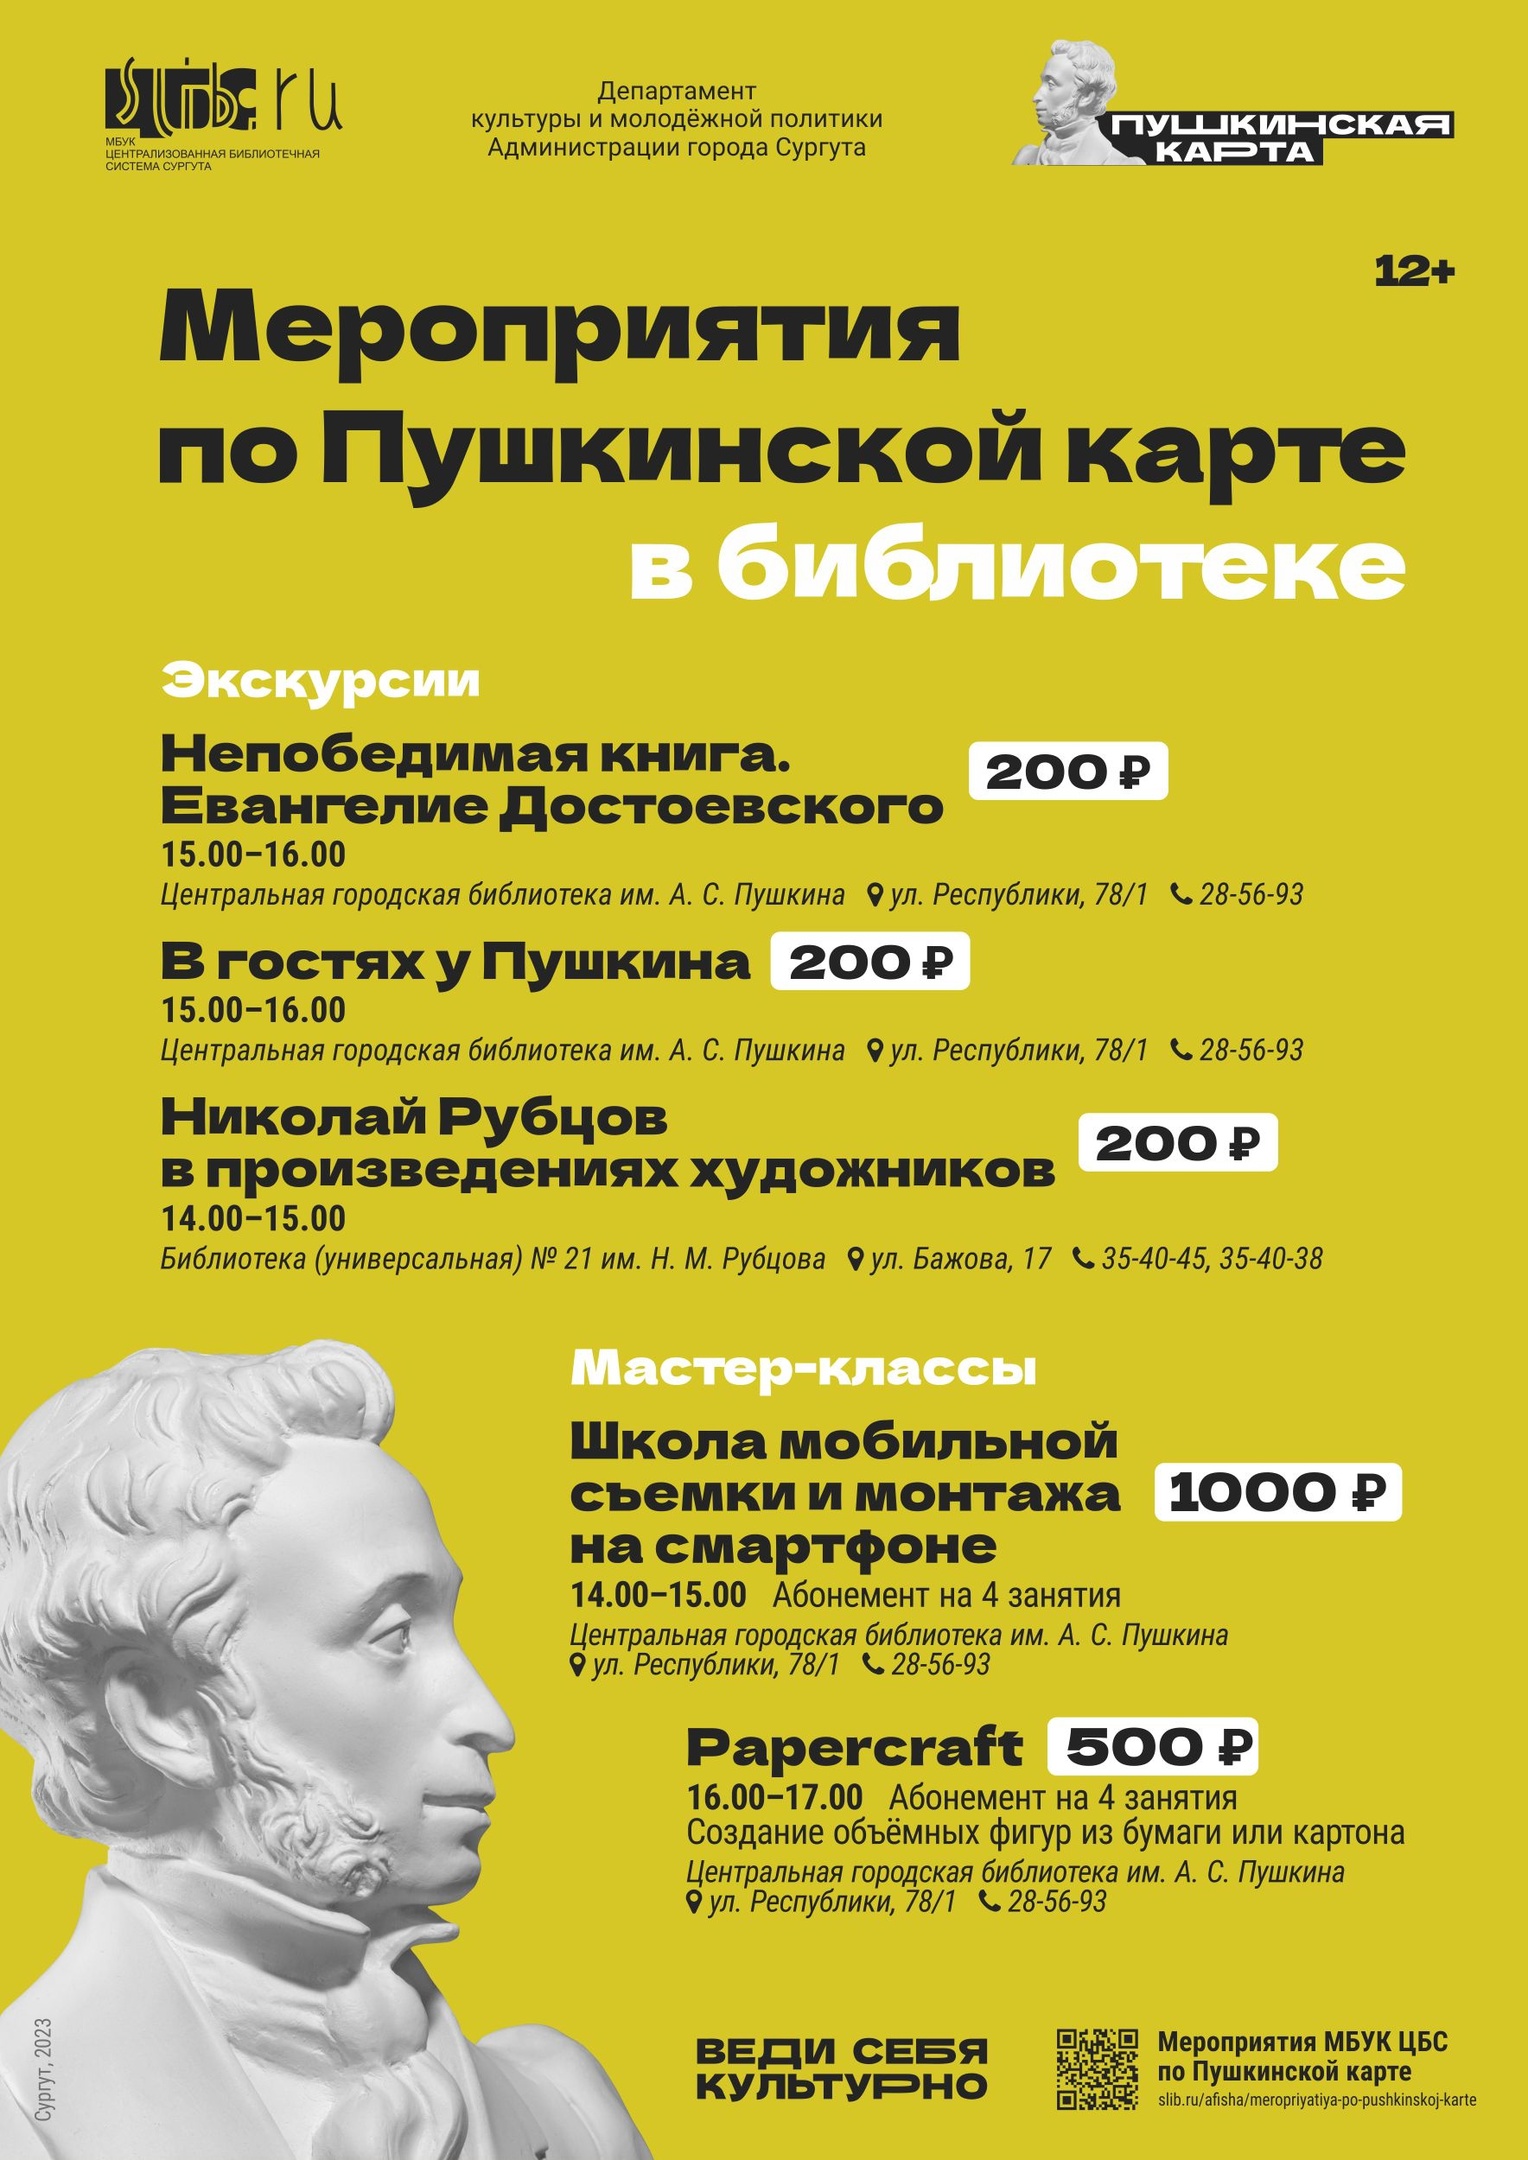 Мероприятия по Пушкинской карте в библиотеке.